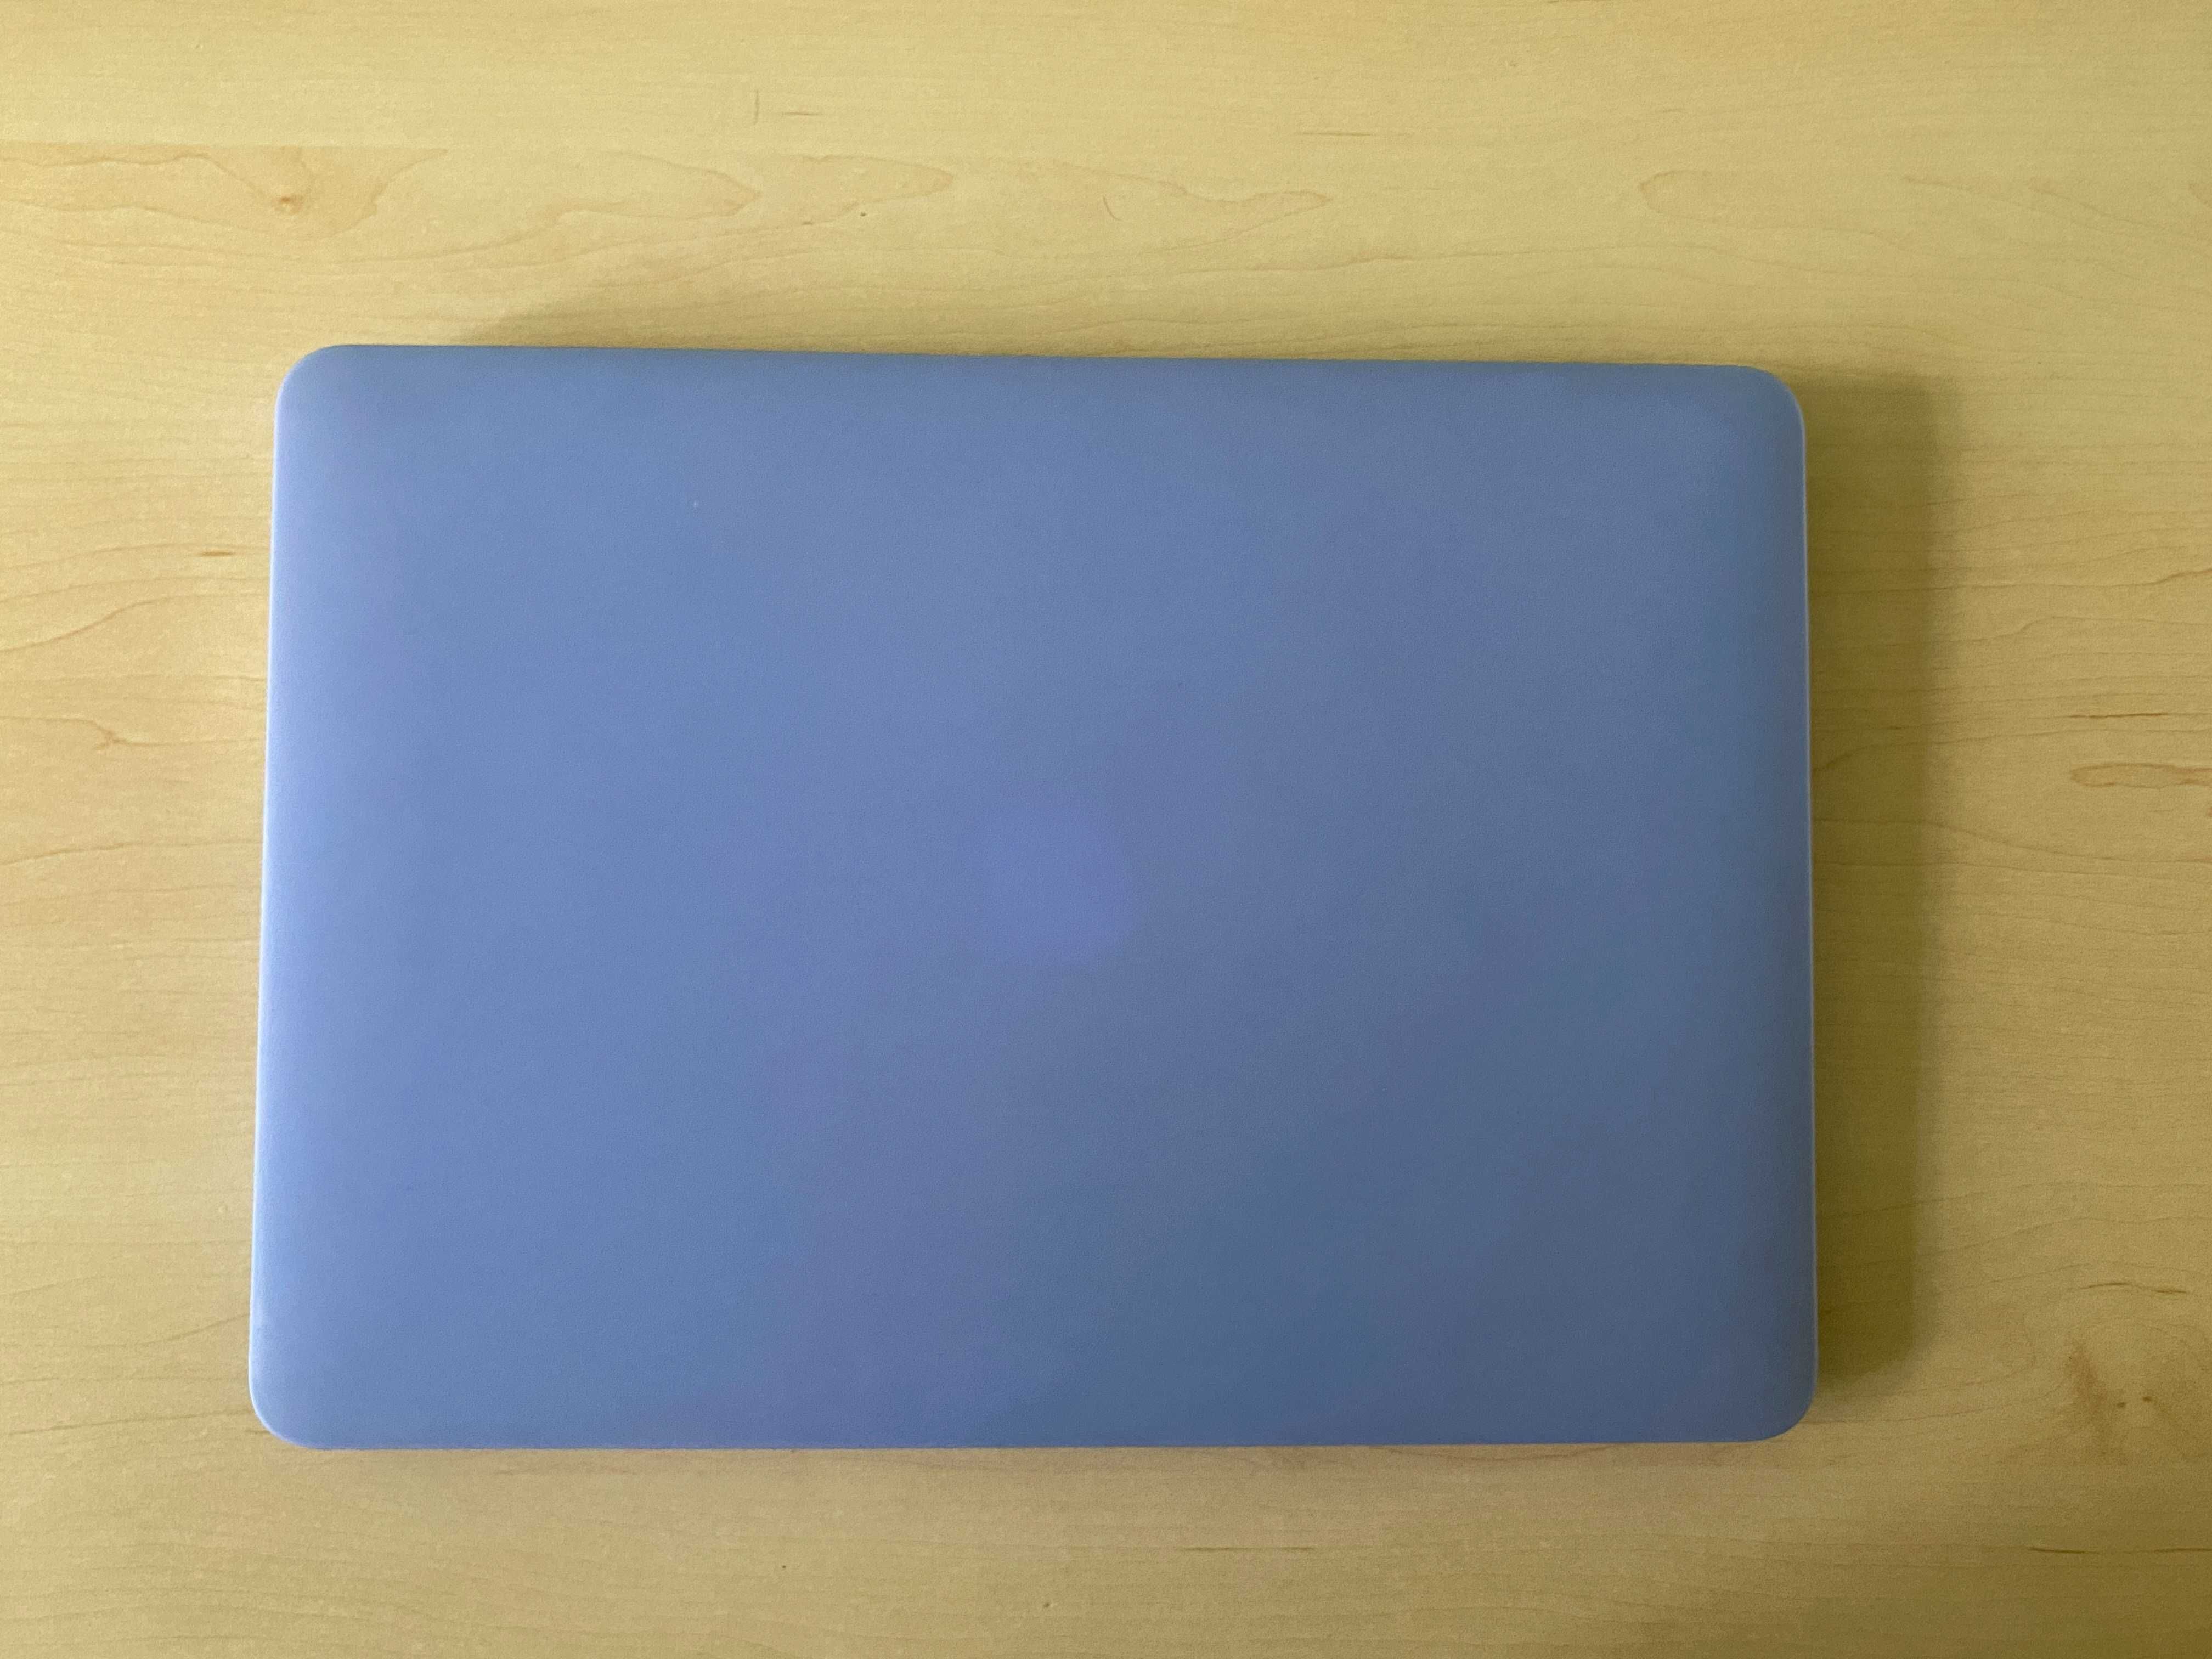 MacBook Air (13-inch, A1466) 500 GB SSD z Procesorem i7 - PREMIUM